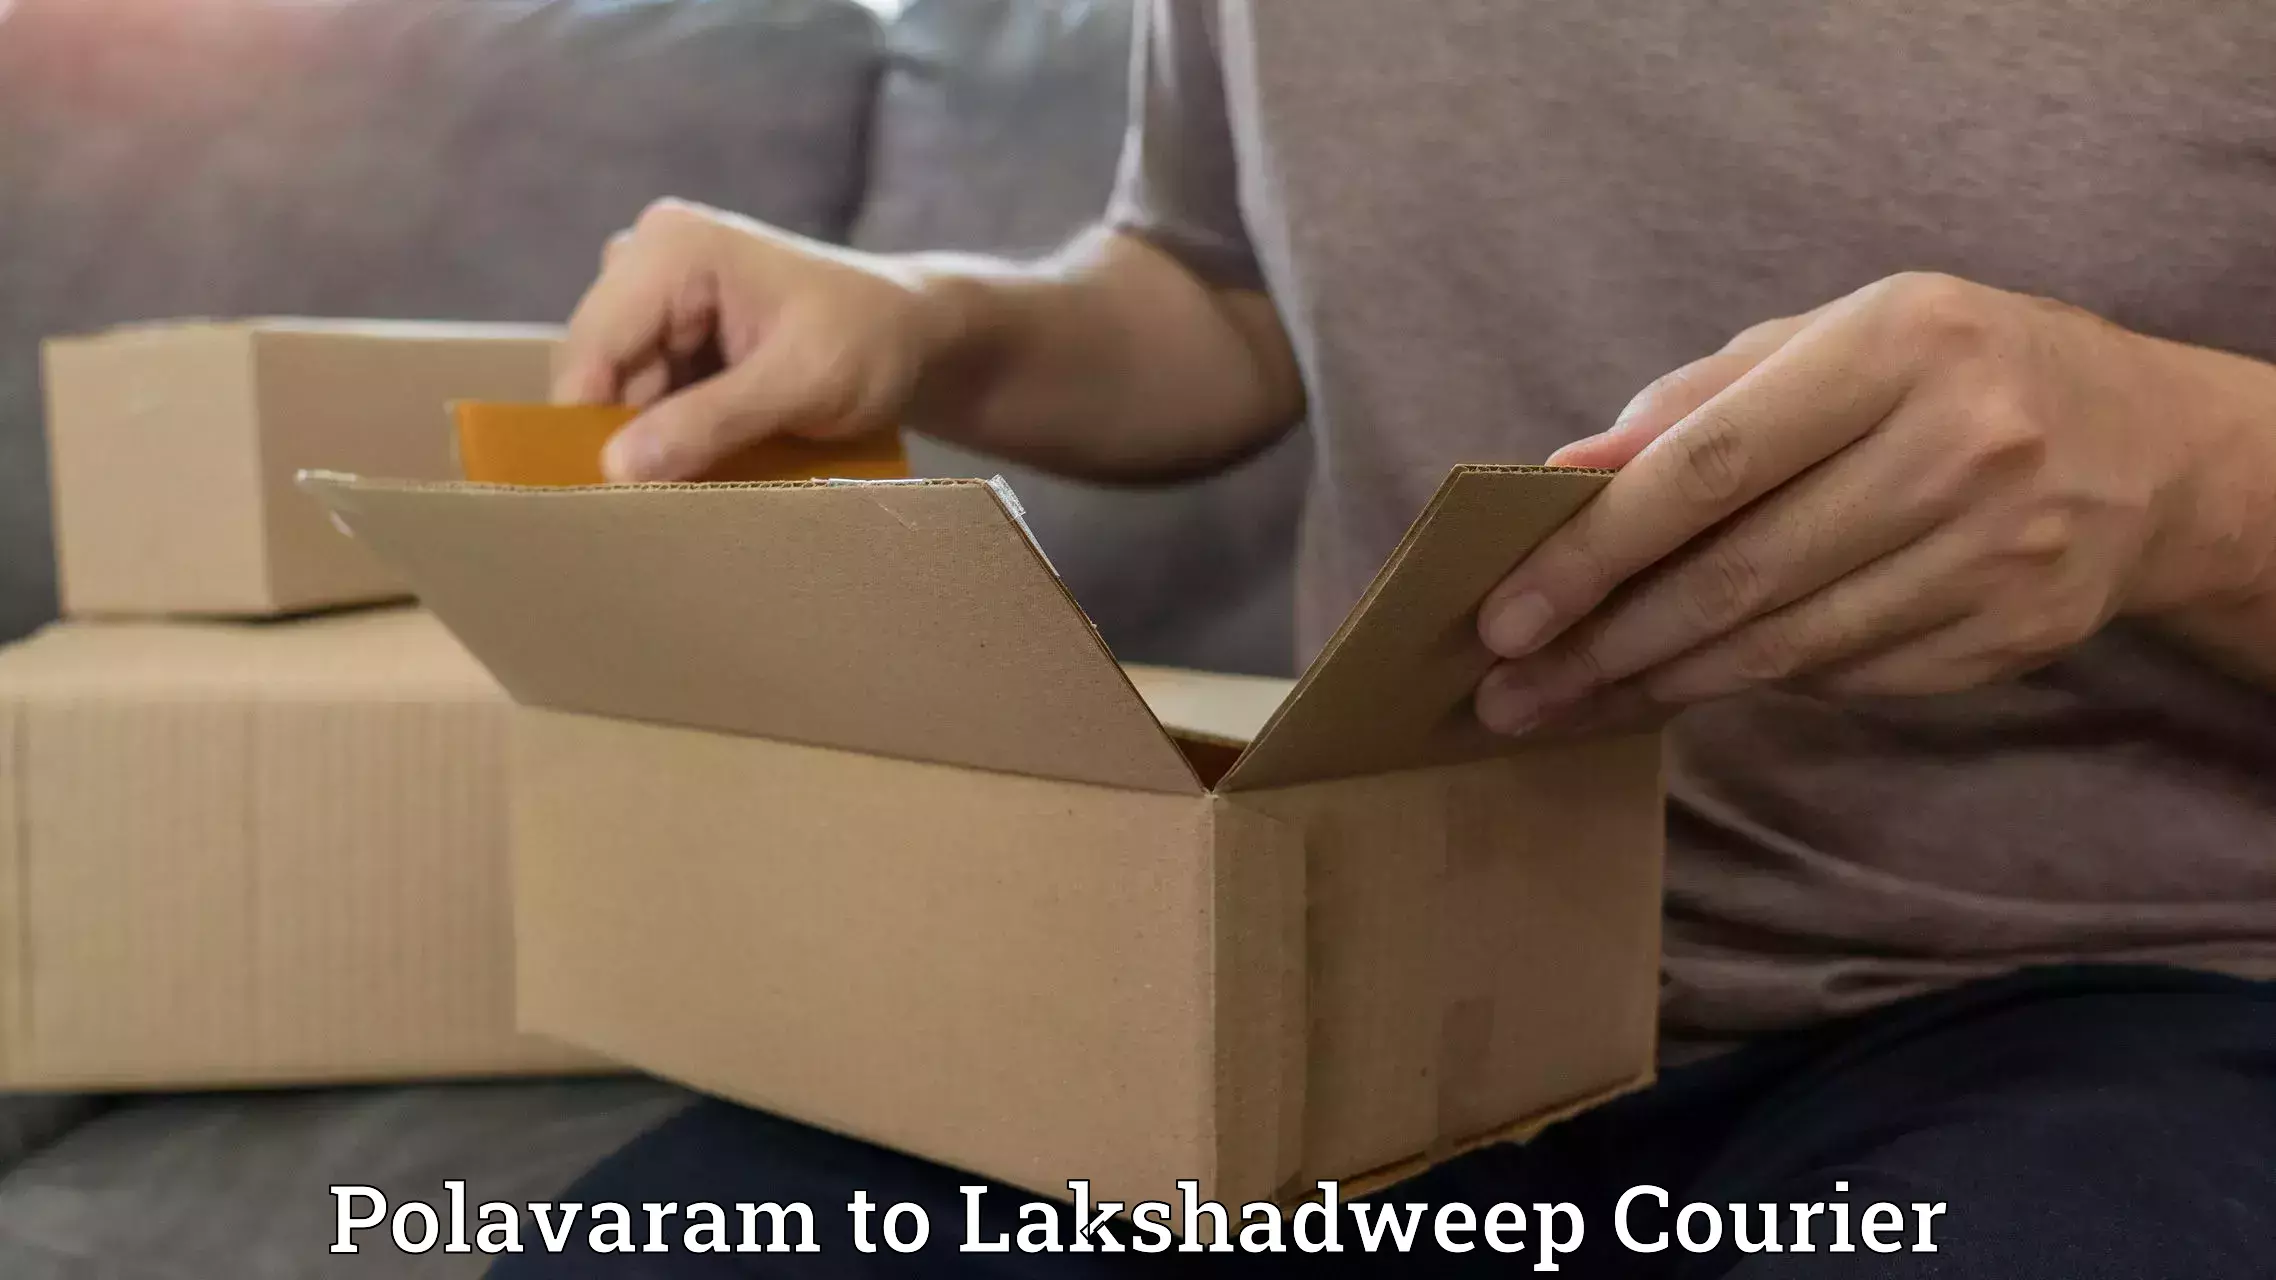 Multi-city courier Polavaram to Lakshadweep